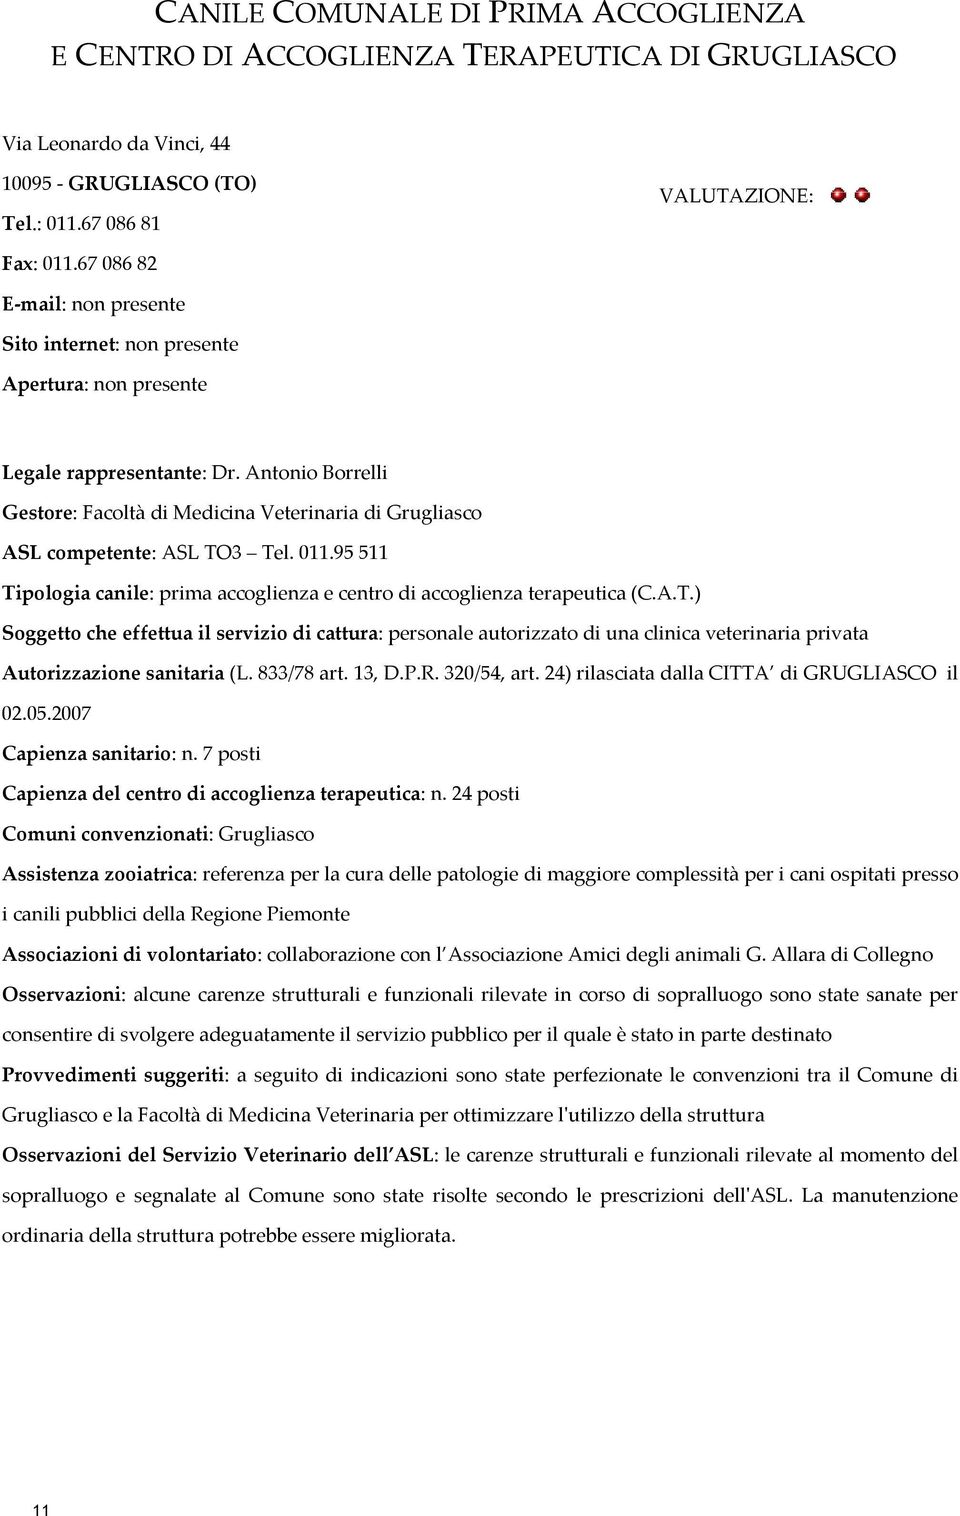 Antonio Borrelli Gestore: Facoltà di Medicina Veterinaria di Grugliasco ASL competente: ASL TO